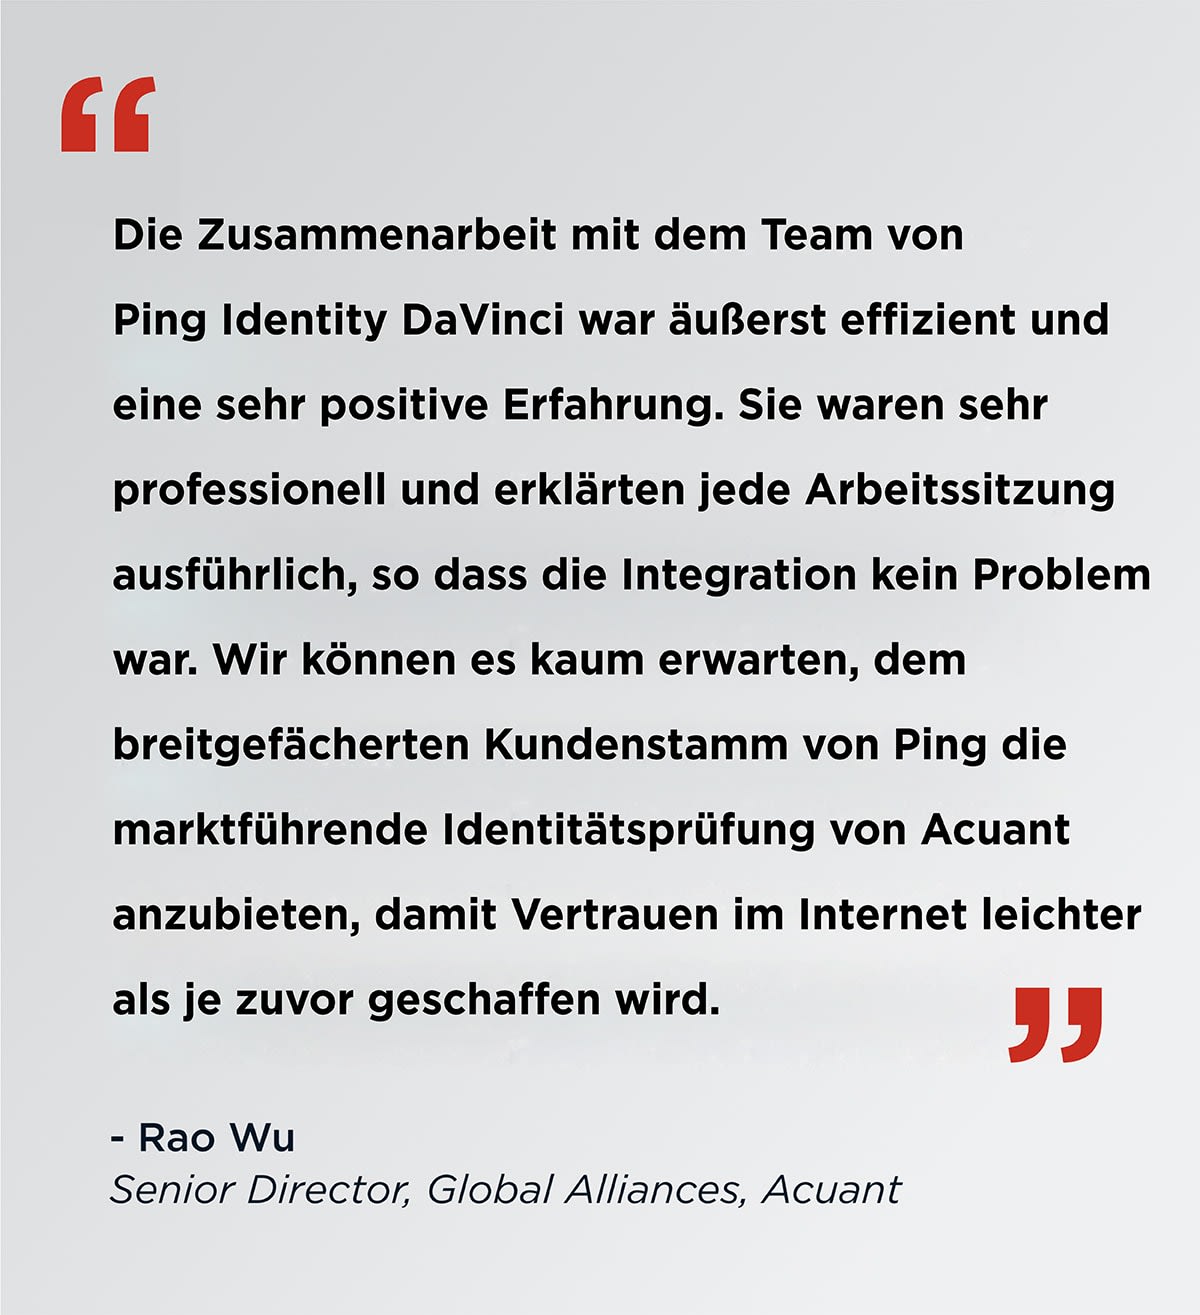 Die Zusammenarbeit mit dem Ping Identiy DaVinci Team war äußerst effizient und eine sehr positive Erfahrung. Sie waren sehr professionell und erklärten jede Arbeitssitzung ausführlich, so dass die Integration kein Problem war. Wir können es kaum erwarten, dem breitgefächerten Kundenstamm von Ping die marktführende Identitätsprüfung von Acuant anzubieten, damit Vertrauen im Internet leichter als je zuvor geschaffen wird. Rao Wu Senior Director, Global Alliances, Acuant